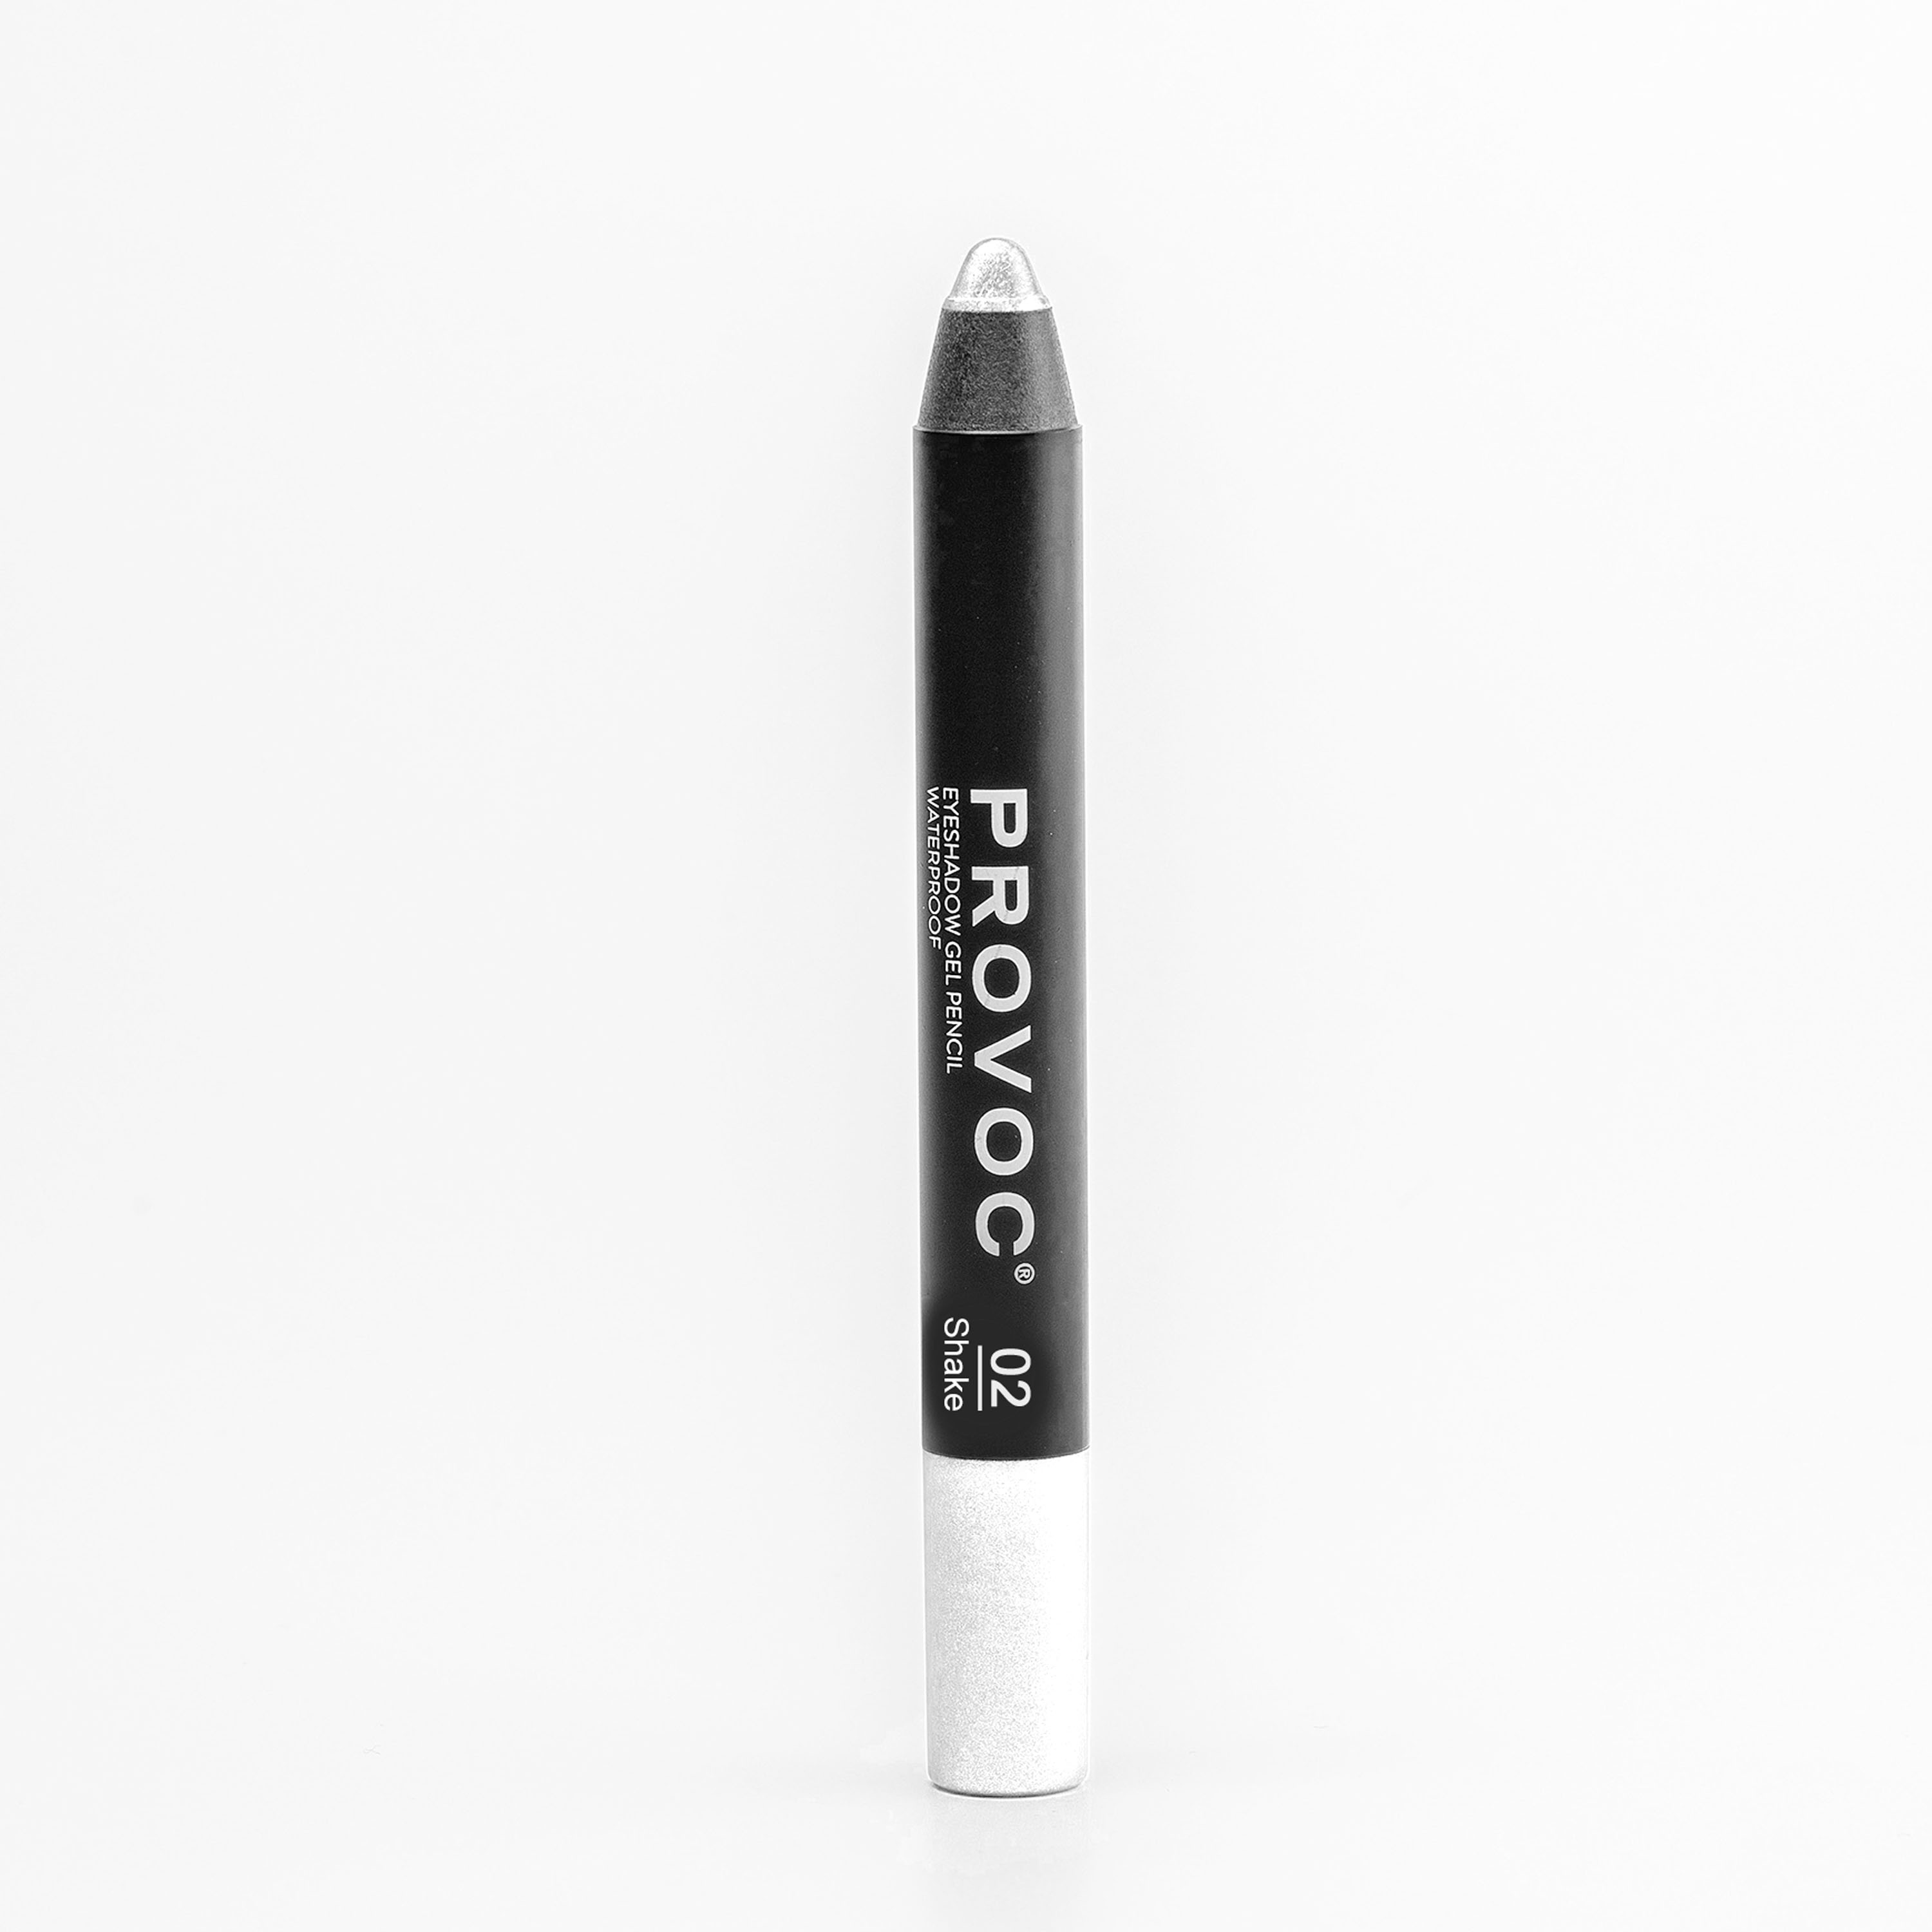 Тени для век Provoc Waterproof Eyeshadow Gel Pencil 02 Жемчужный 2,3 г тени карандаш водостойкие матовые 06 темный шоколад eyeshadow pencil 2 3 г